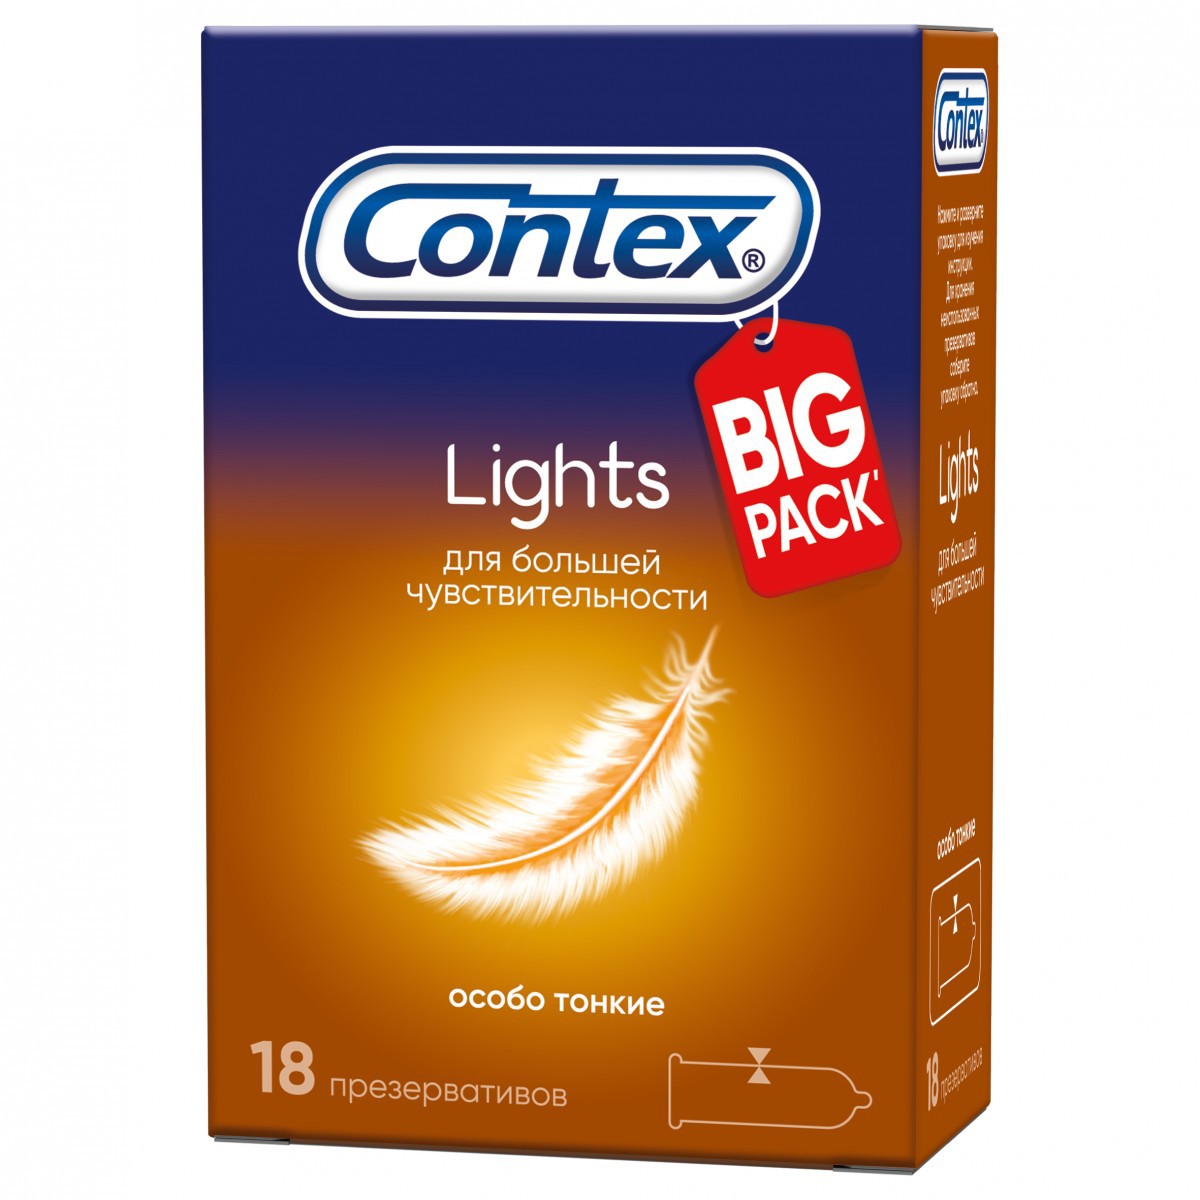 Презервативы CONTEX Lights особо тонкие N18 уп